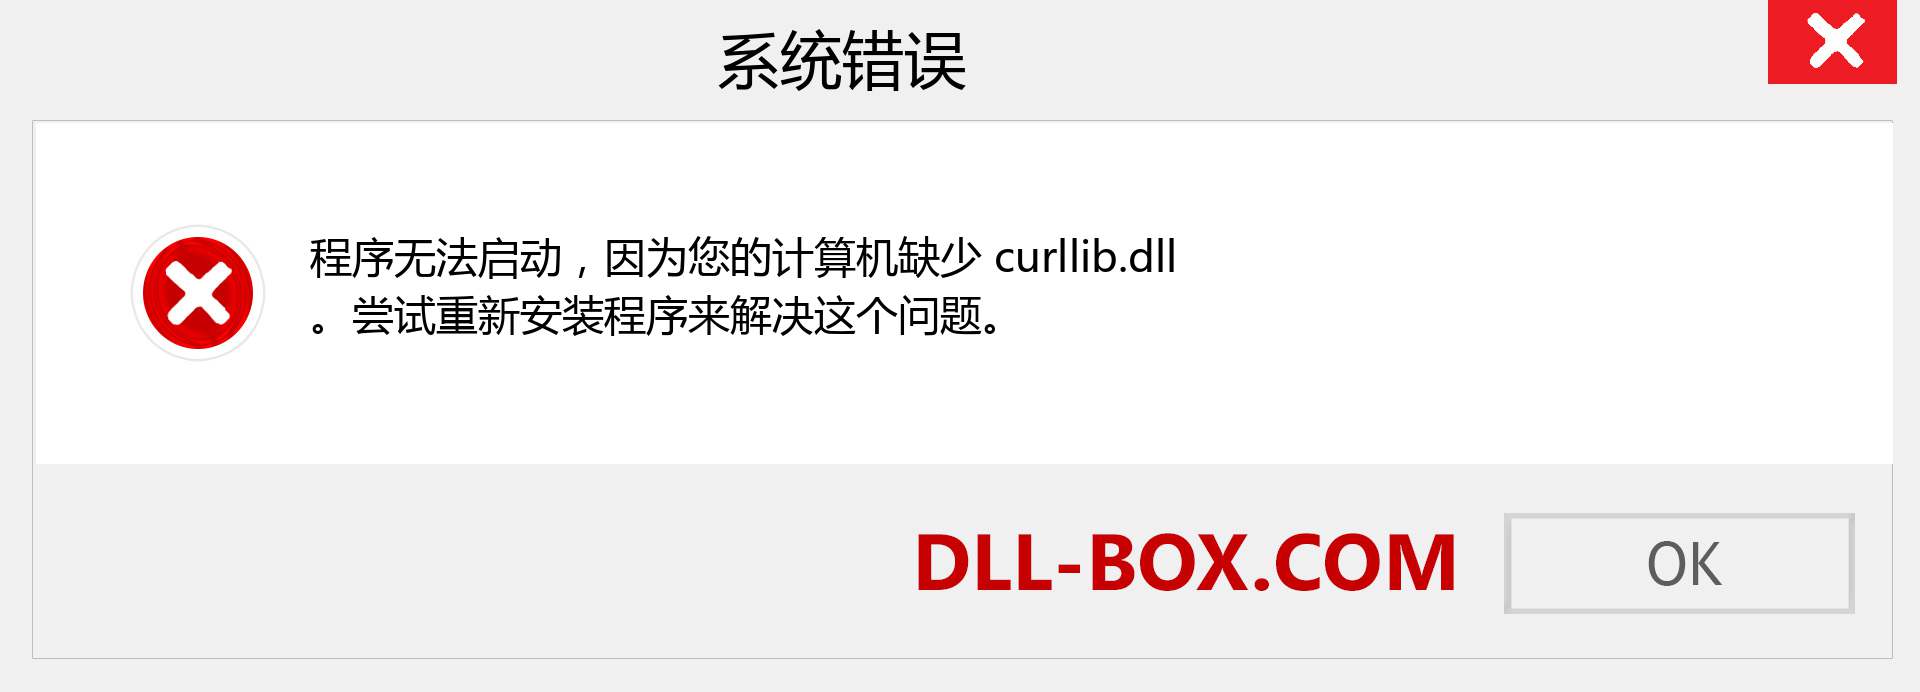 curllib.dll 文件丢失？。 适用于 Windows 7、8、10 的下载 - 修复 Windows、照片、图像上的 curllib dll 丢失错误